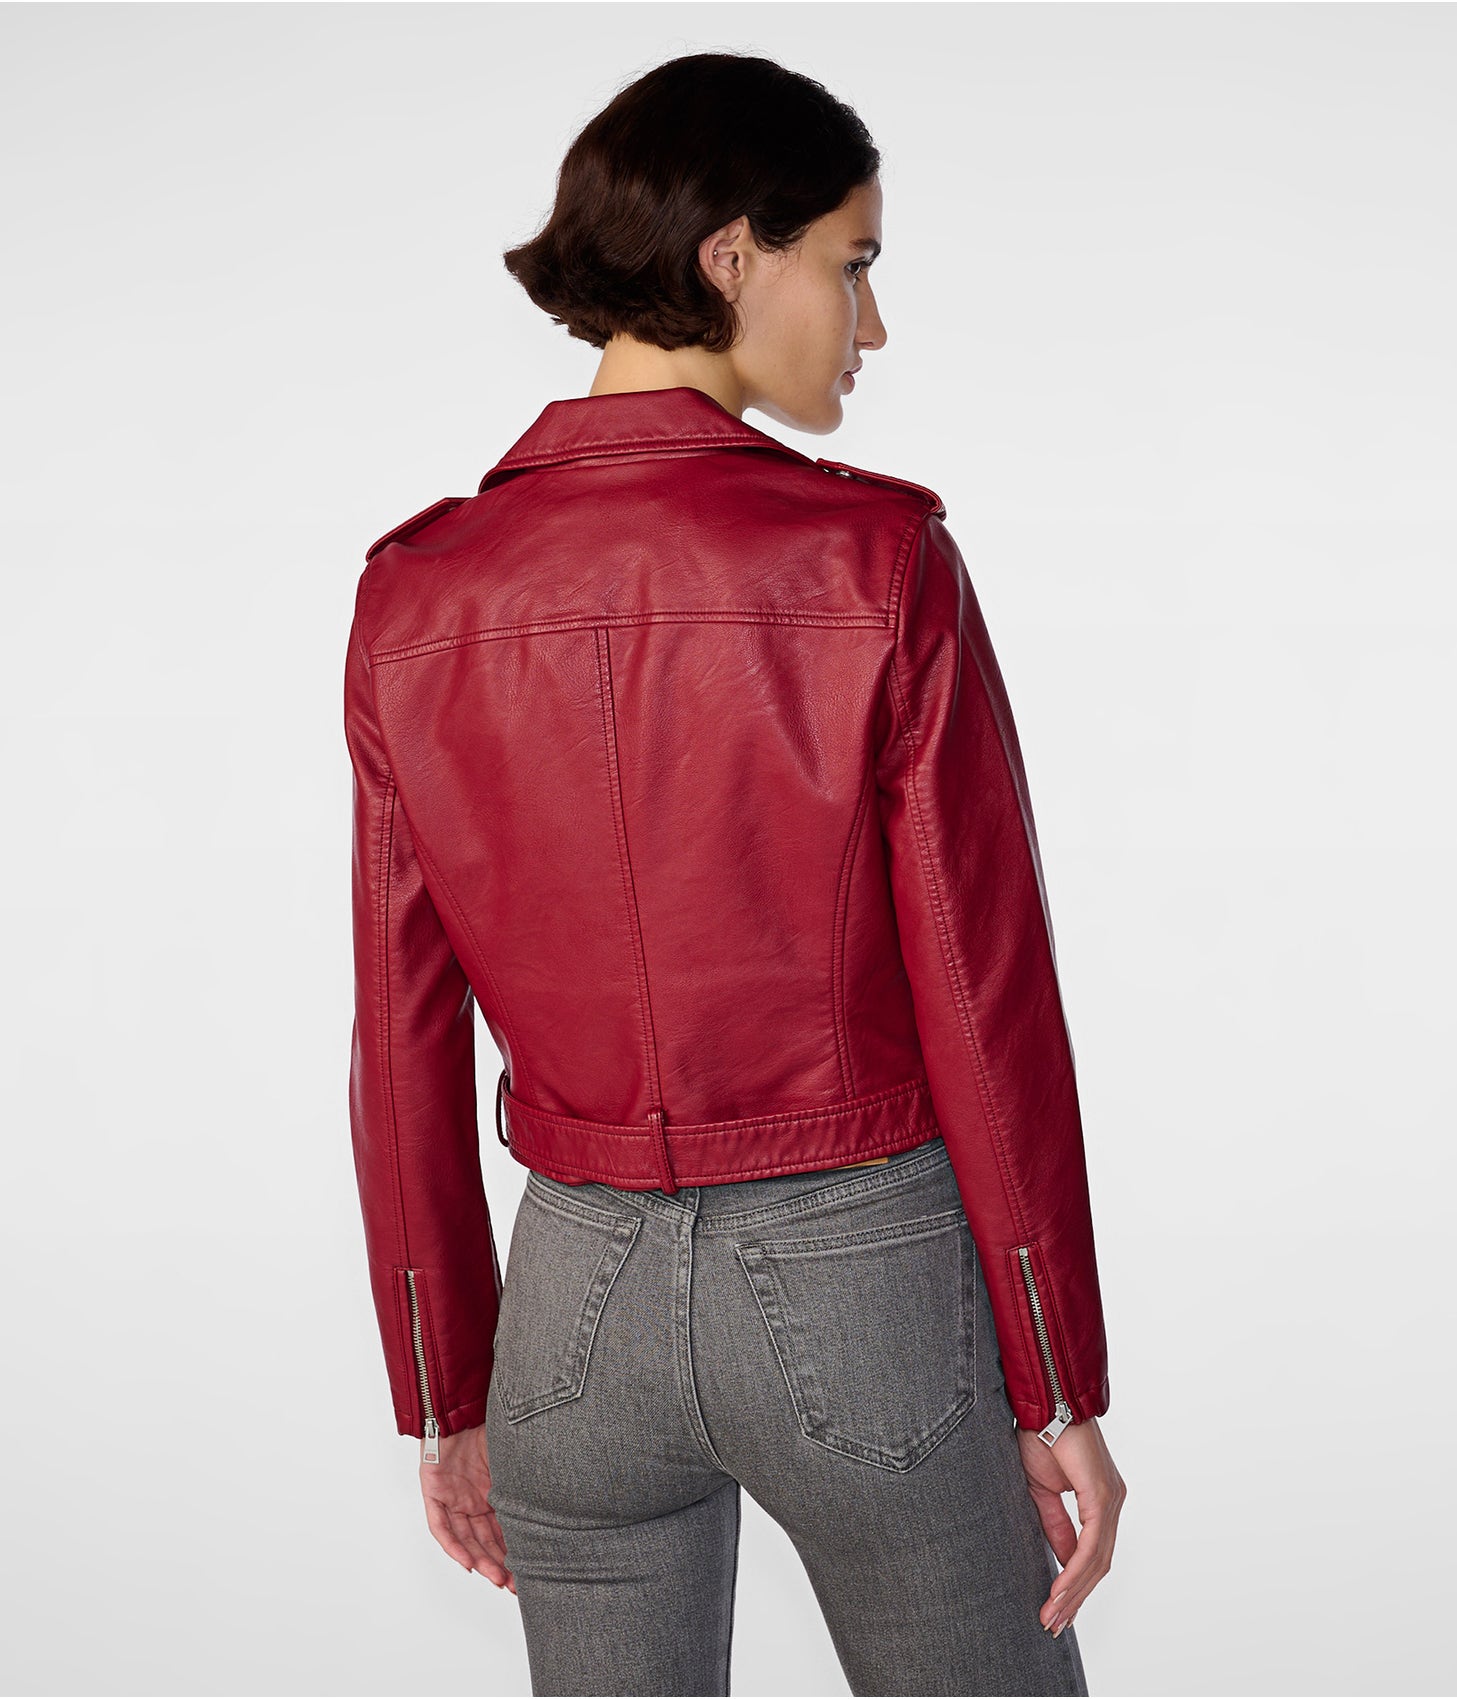 Women's Biker Leather Jacket In Wine Red